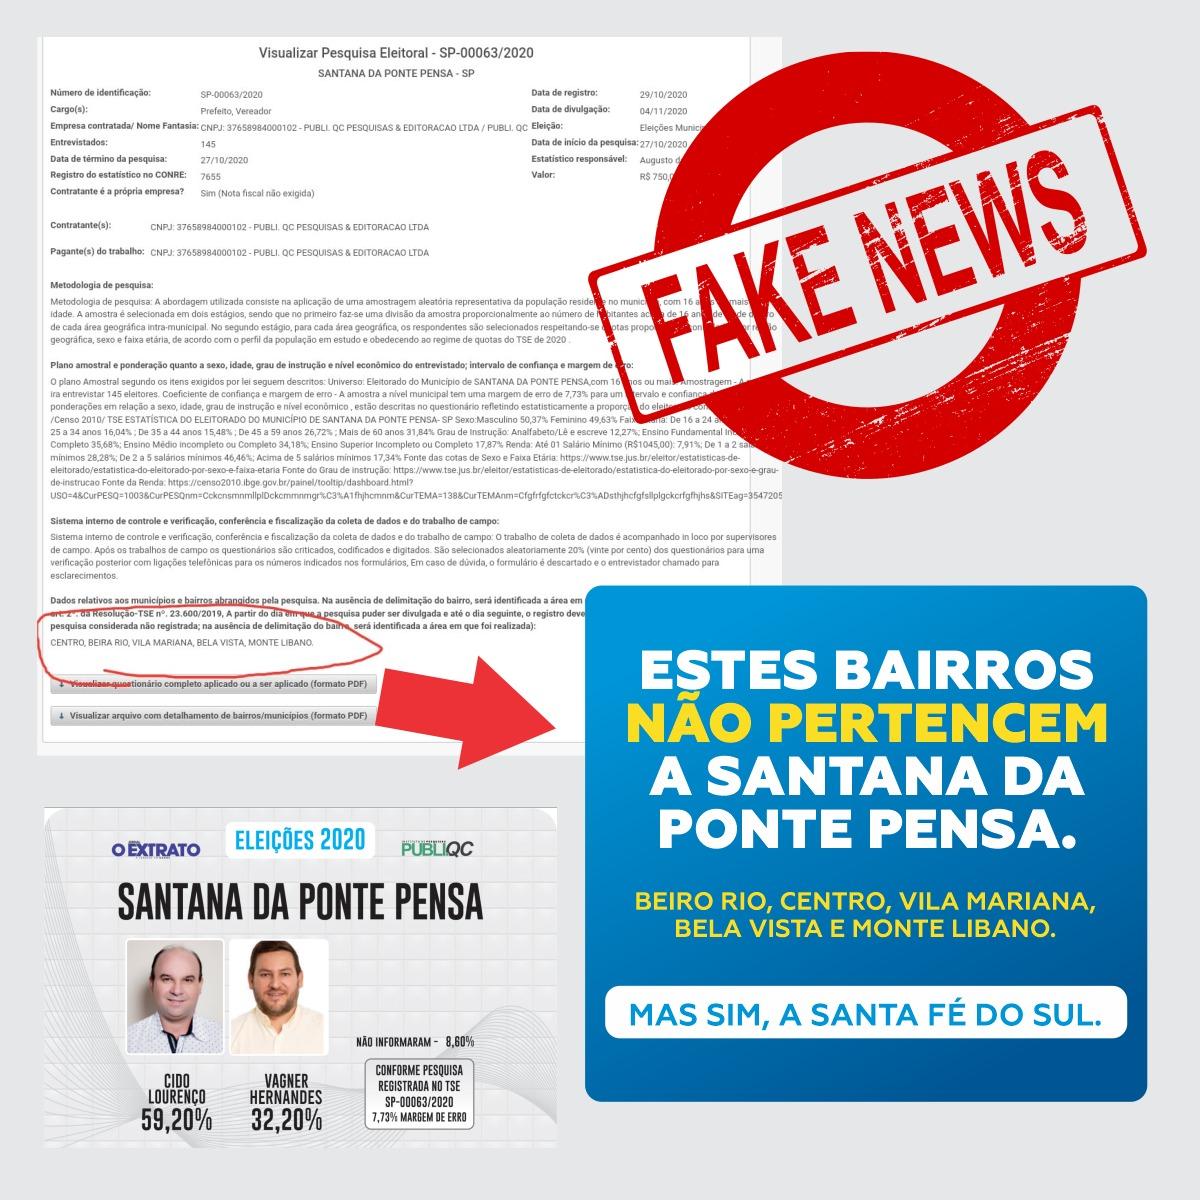 Jornal que teve circulação proibida divulga pesquisa com bairros que não pertencem a Santana da Ponte Pensa